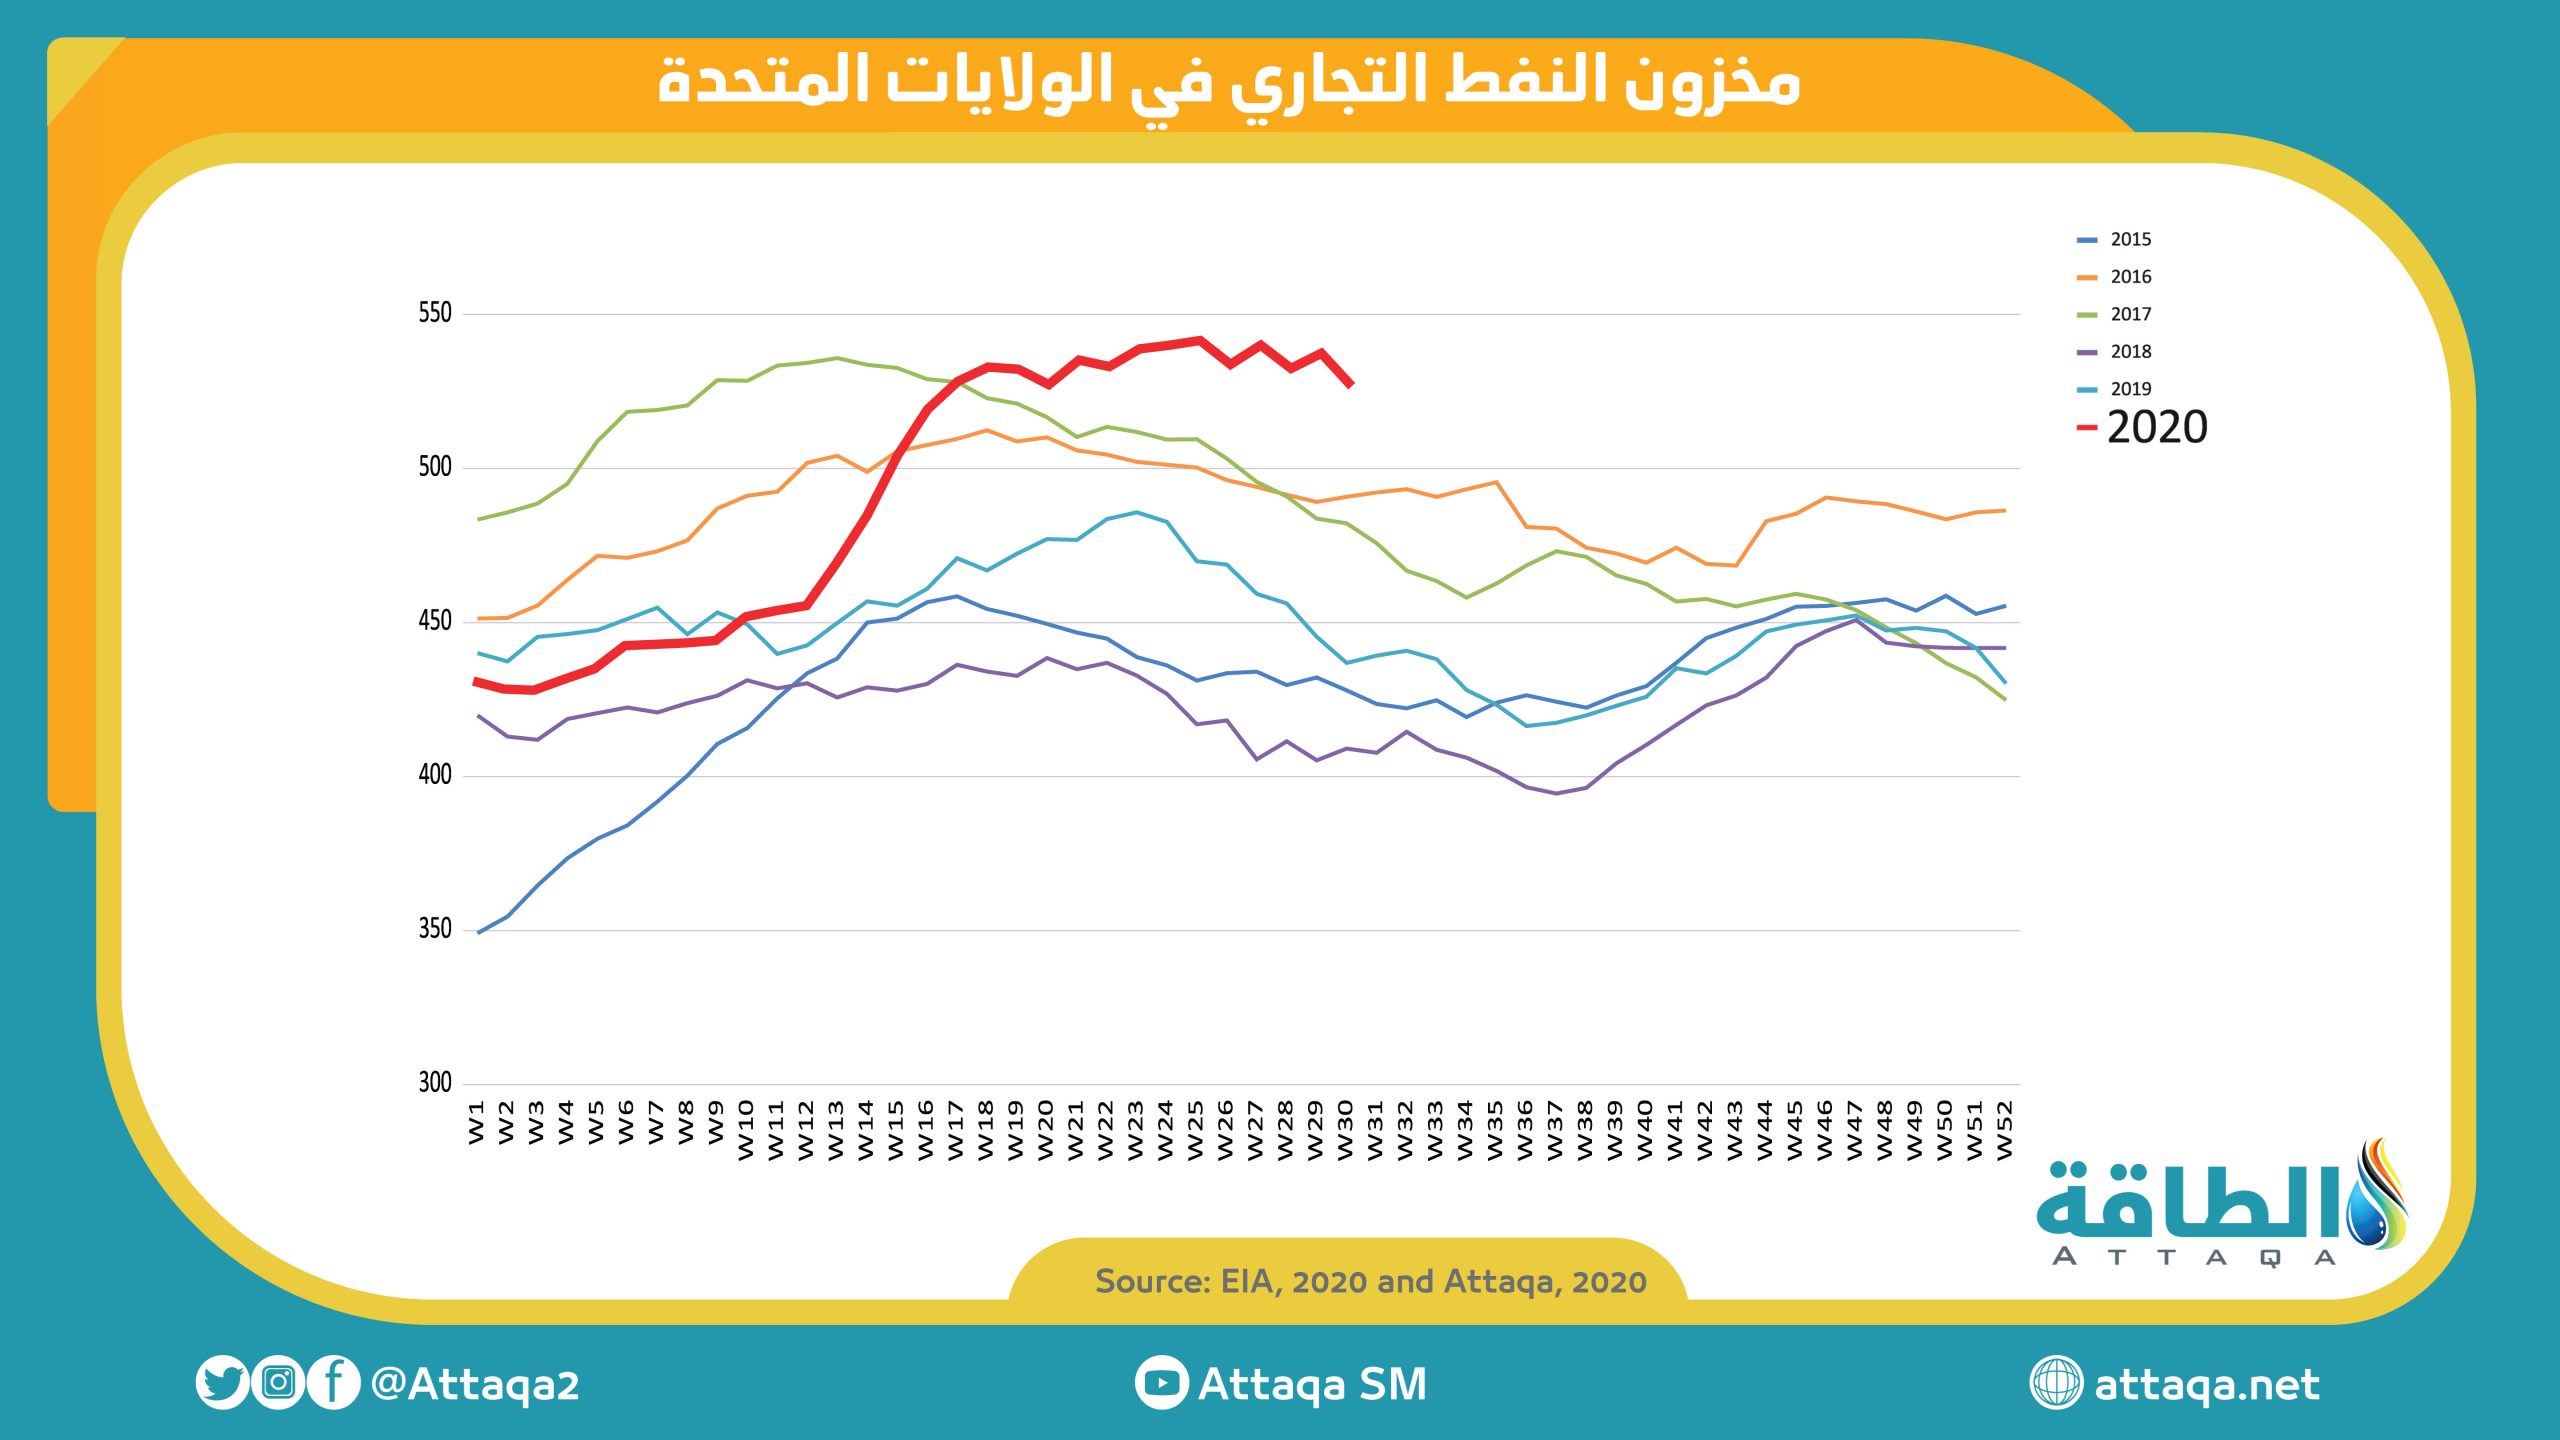 زيادة الاستهلاك وتخفيض السعودية لصارداتها بمستويات تاريخية.. يخفض مخزونات النفط الأميركية